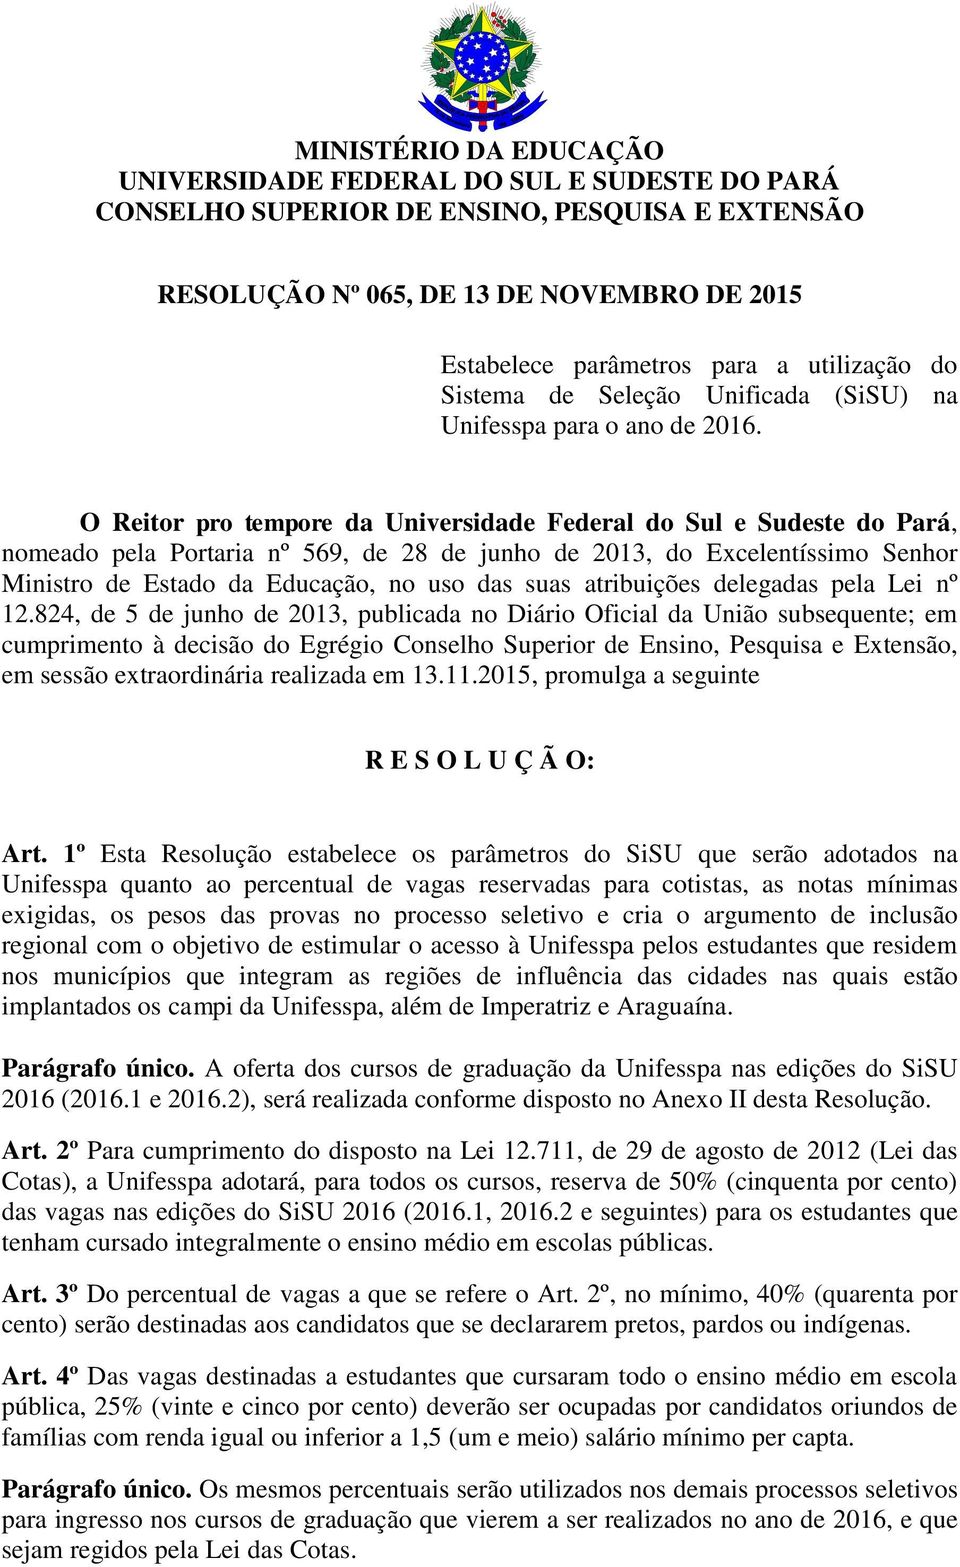 O Reitor pro tempore da Universidade Federal do Sul e Sudeste do Pará, nomeado pela Portaria nº 569, de 28 de junho de 2013, do Excelentíssimo Senhor Ministro de Estado da Educação, no uso das suas